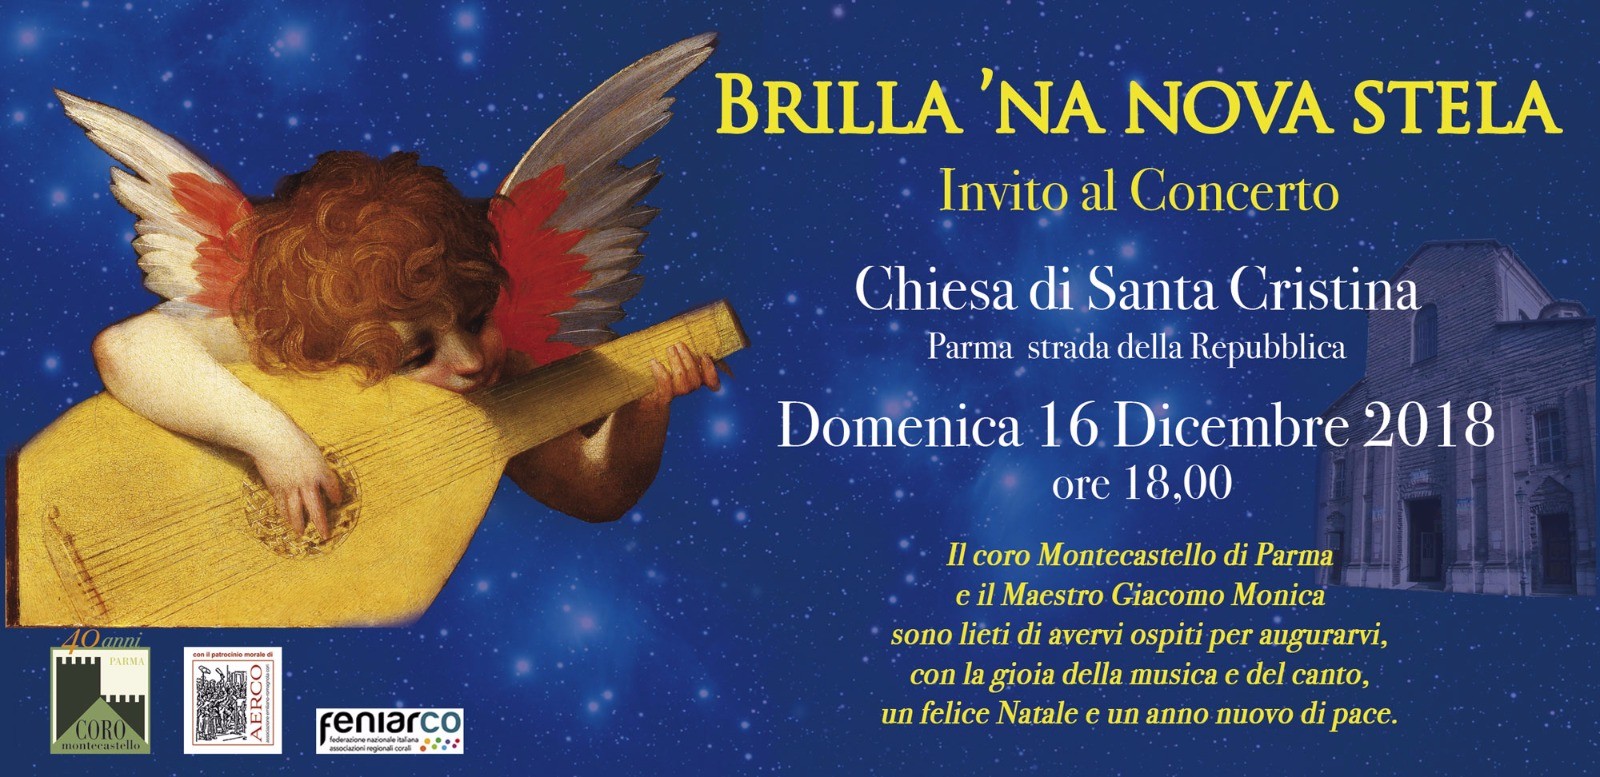 Brilla 'na nova stella, concerto nella chiesa di Santa Cristina